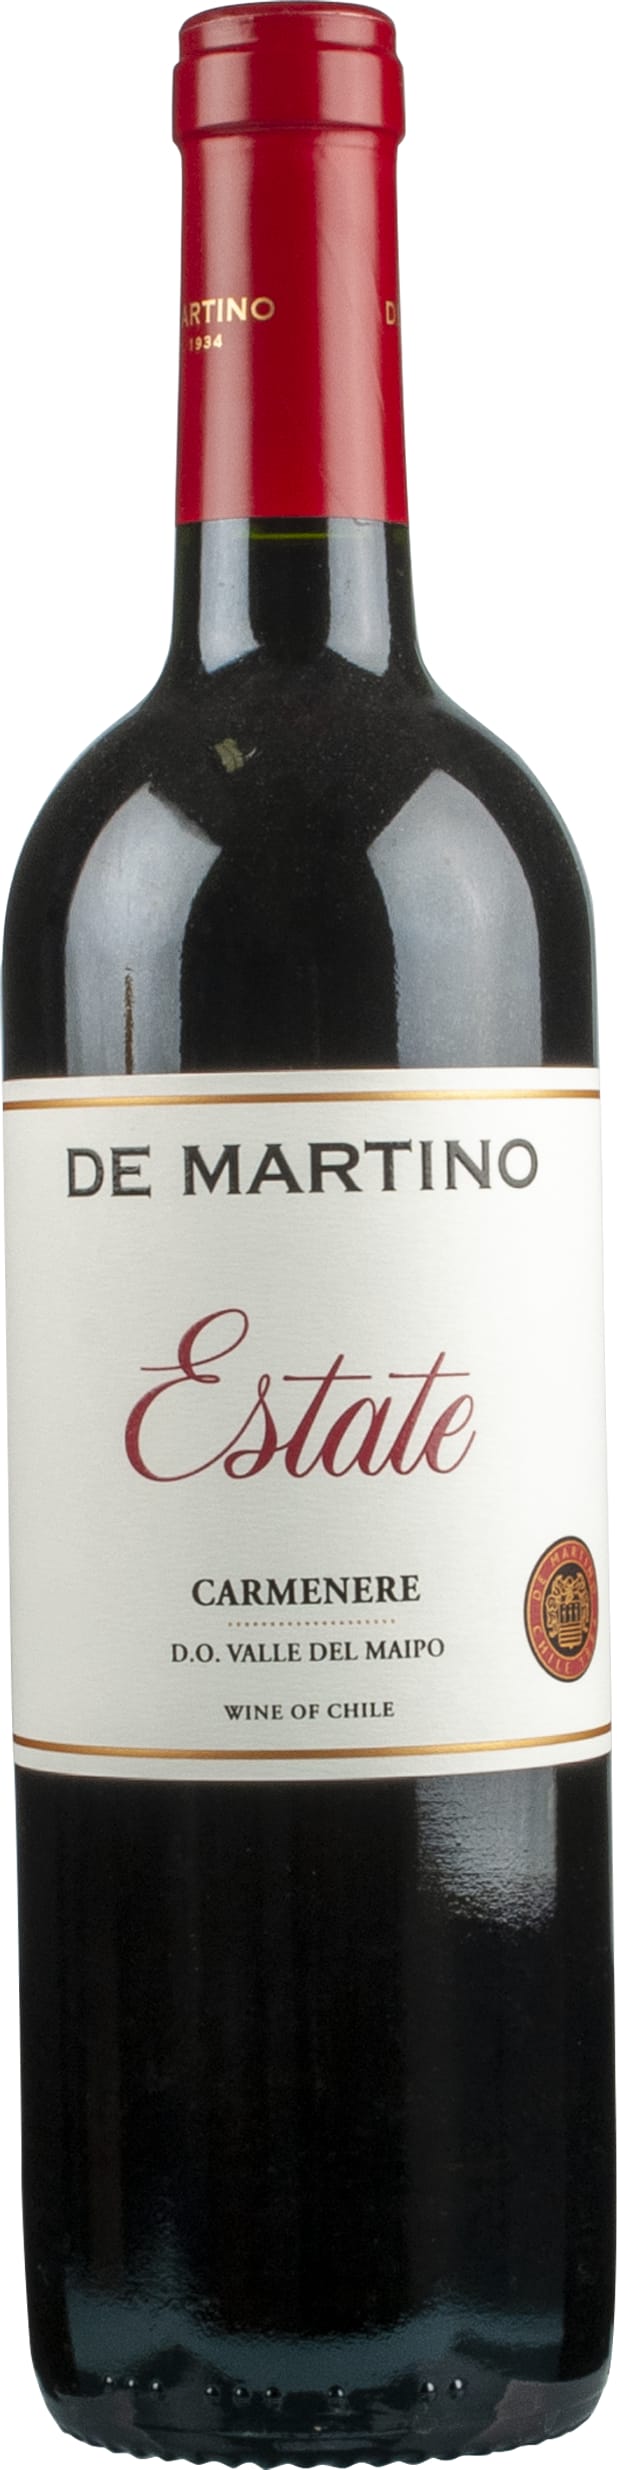 De Martino Estate Carmenere 2022 75cl - Buy De Martino Wines from GREAT WINES DIRECT wine shop